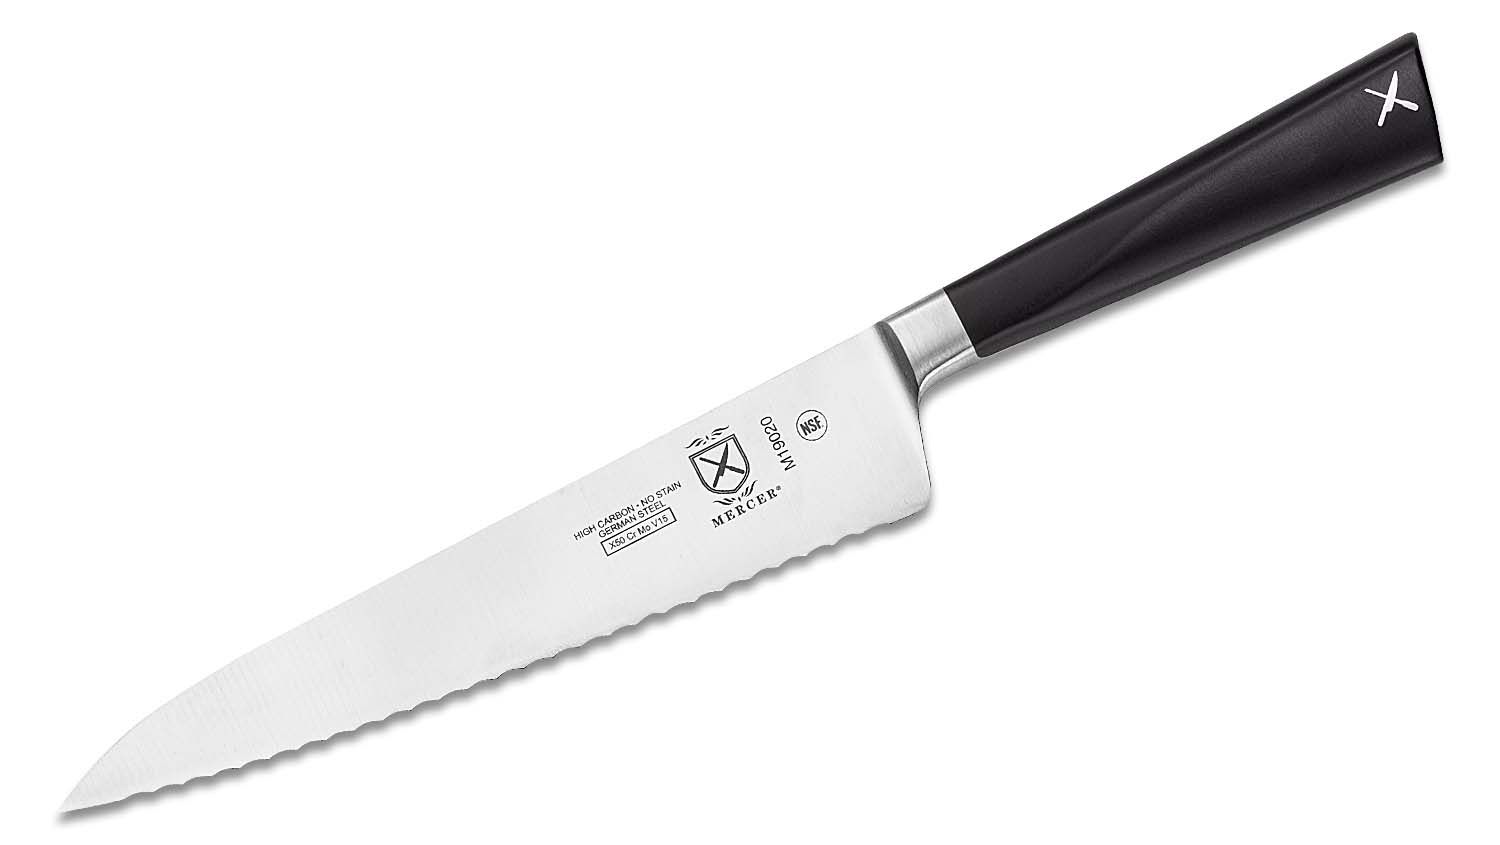 Mercer Culinary M19020 zum 6-Inch Forged Utility Wavy Edge Knife